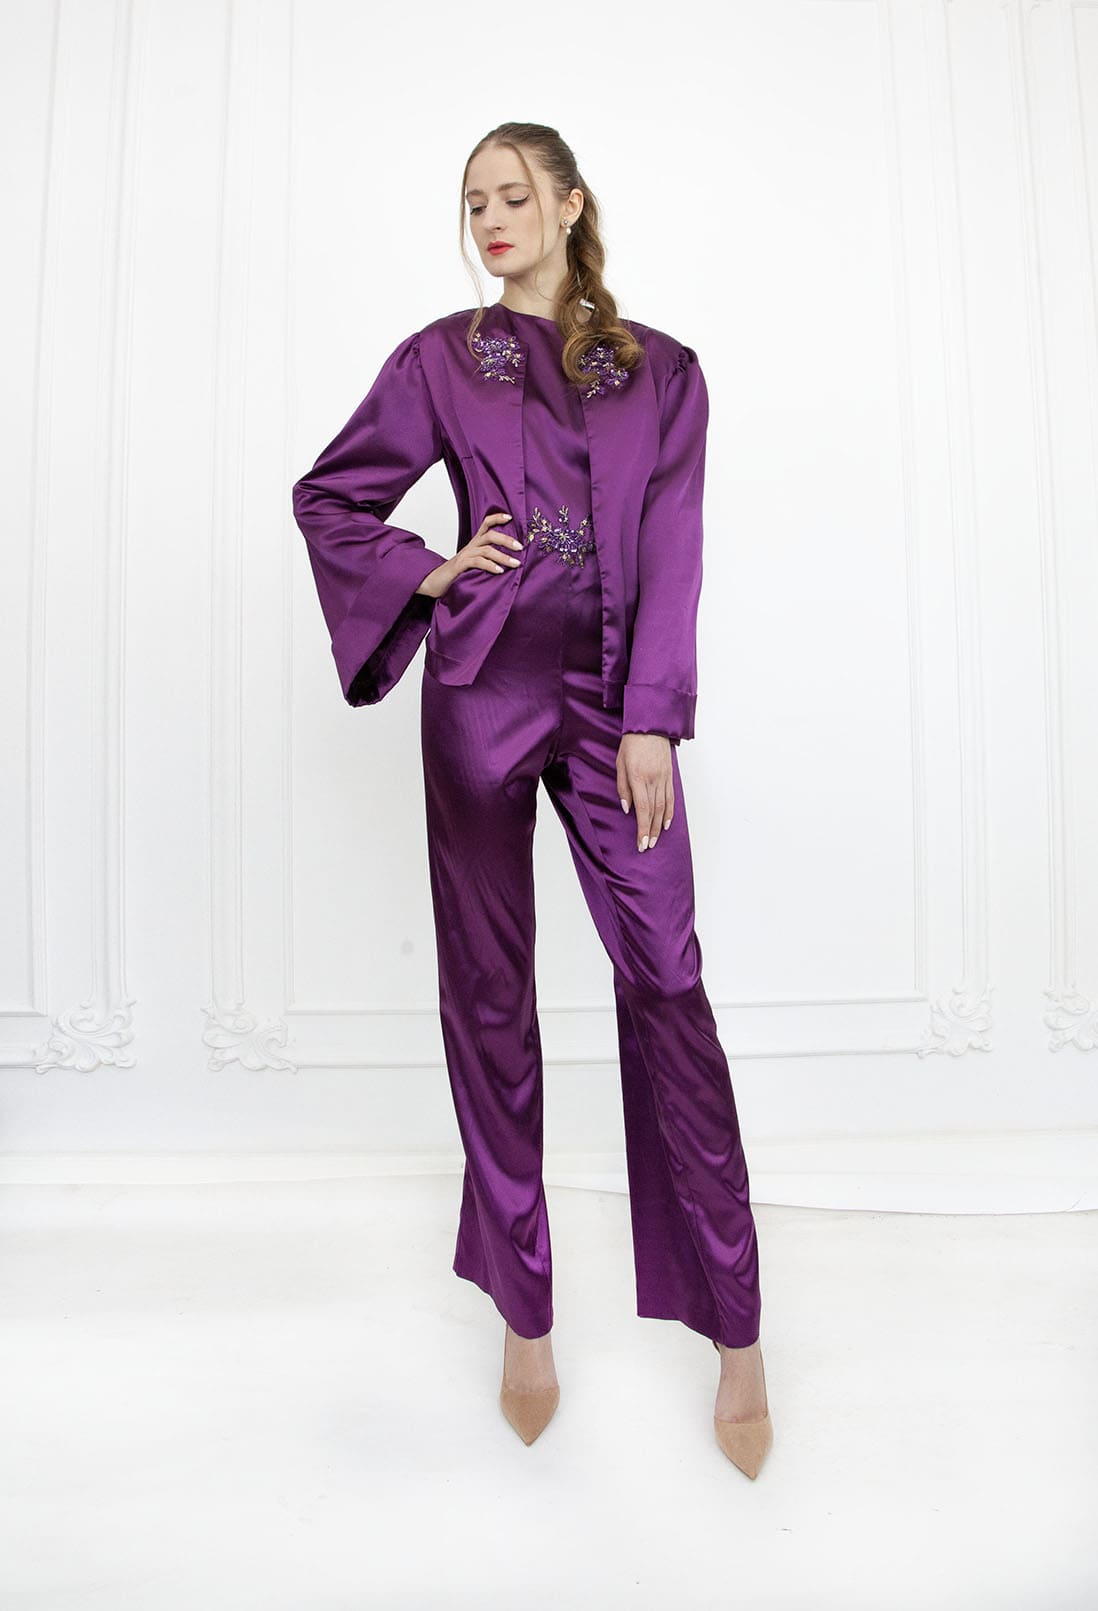 Combinaison de mariage lila violet avec veste